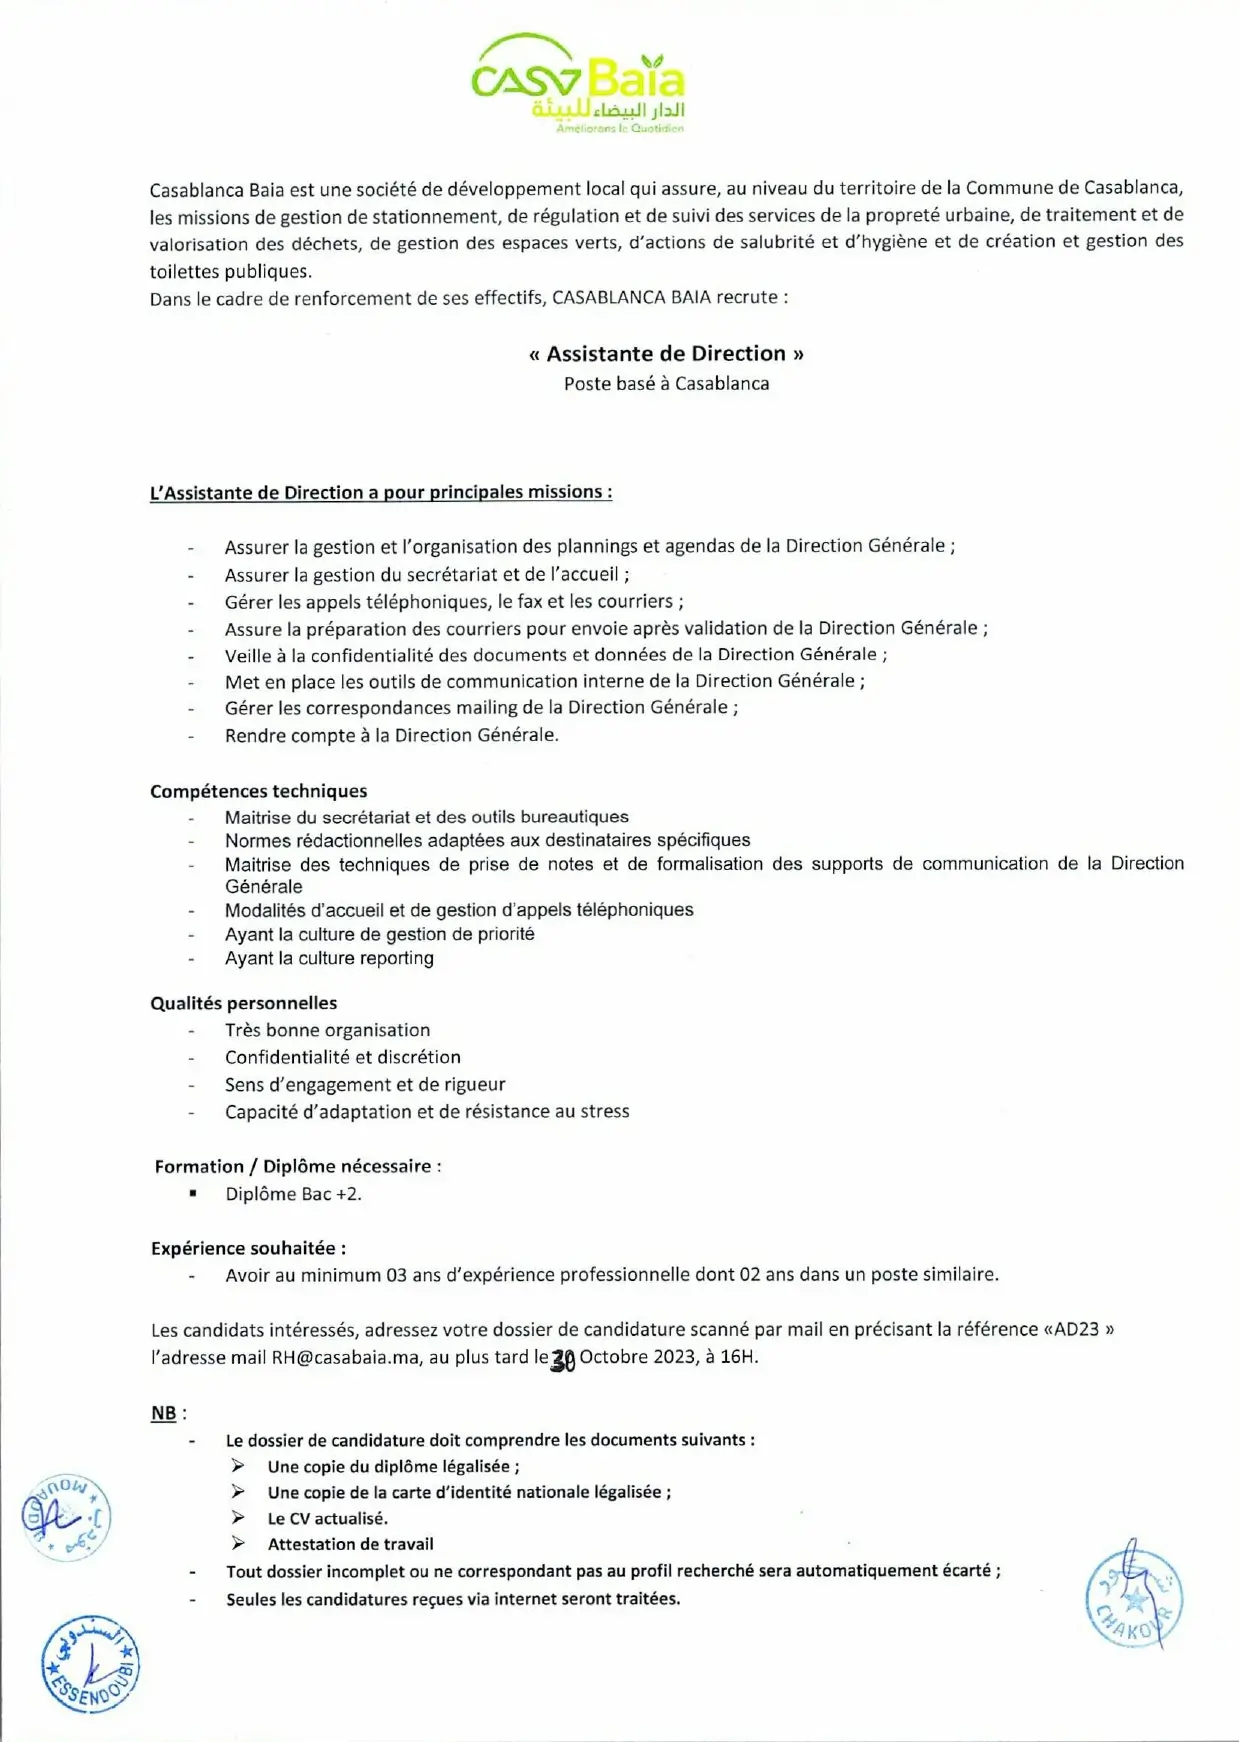 Concours de recrutement Casablanca Baia 2023